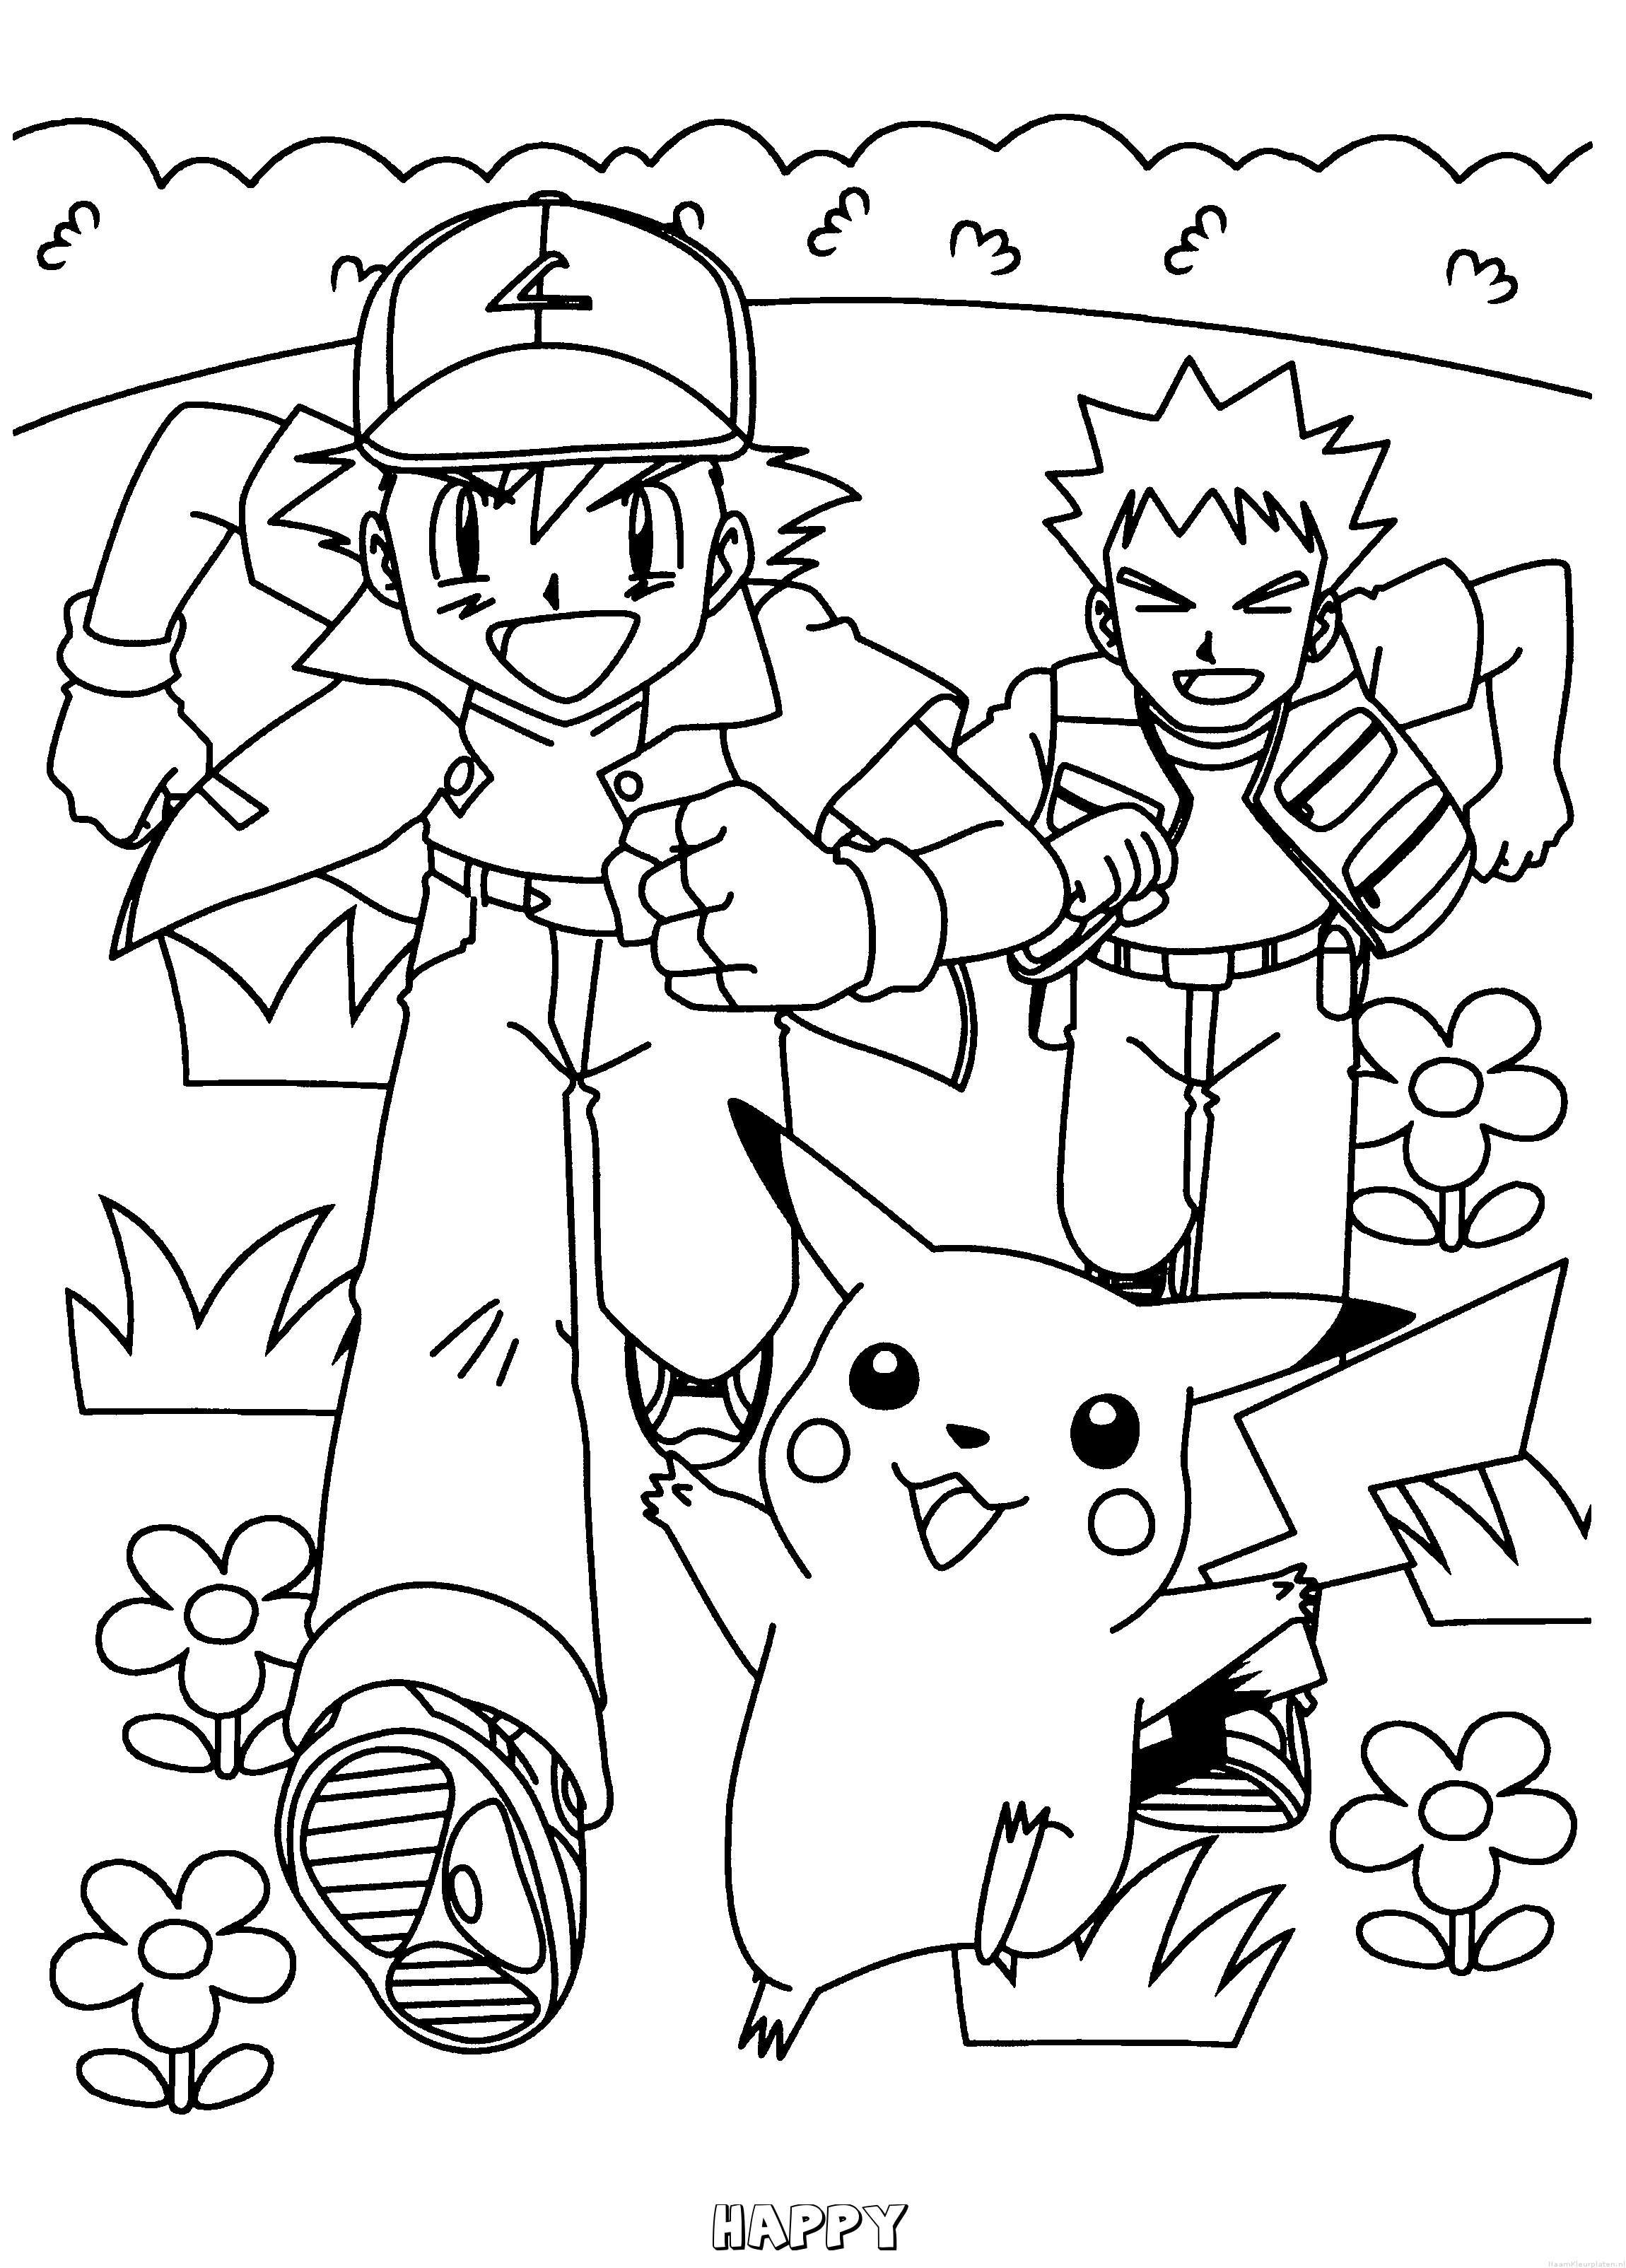 Happy pokemon